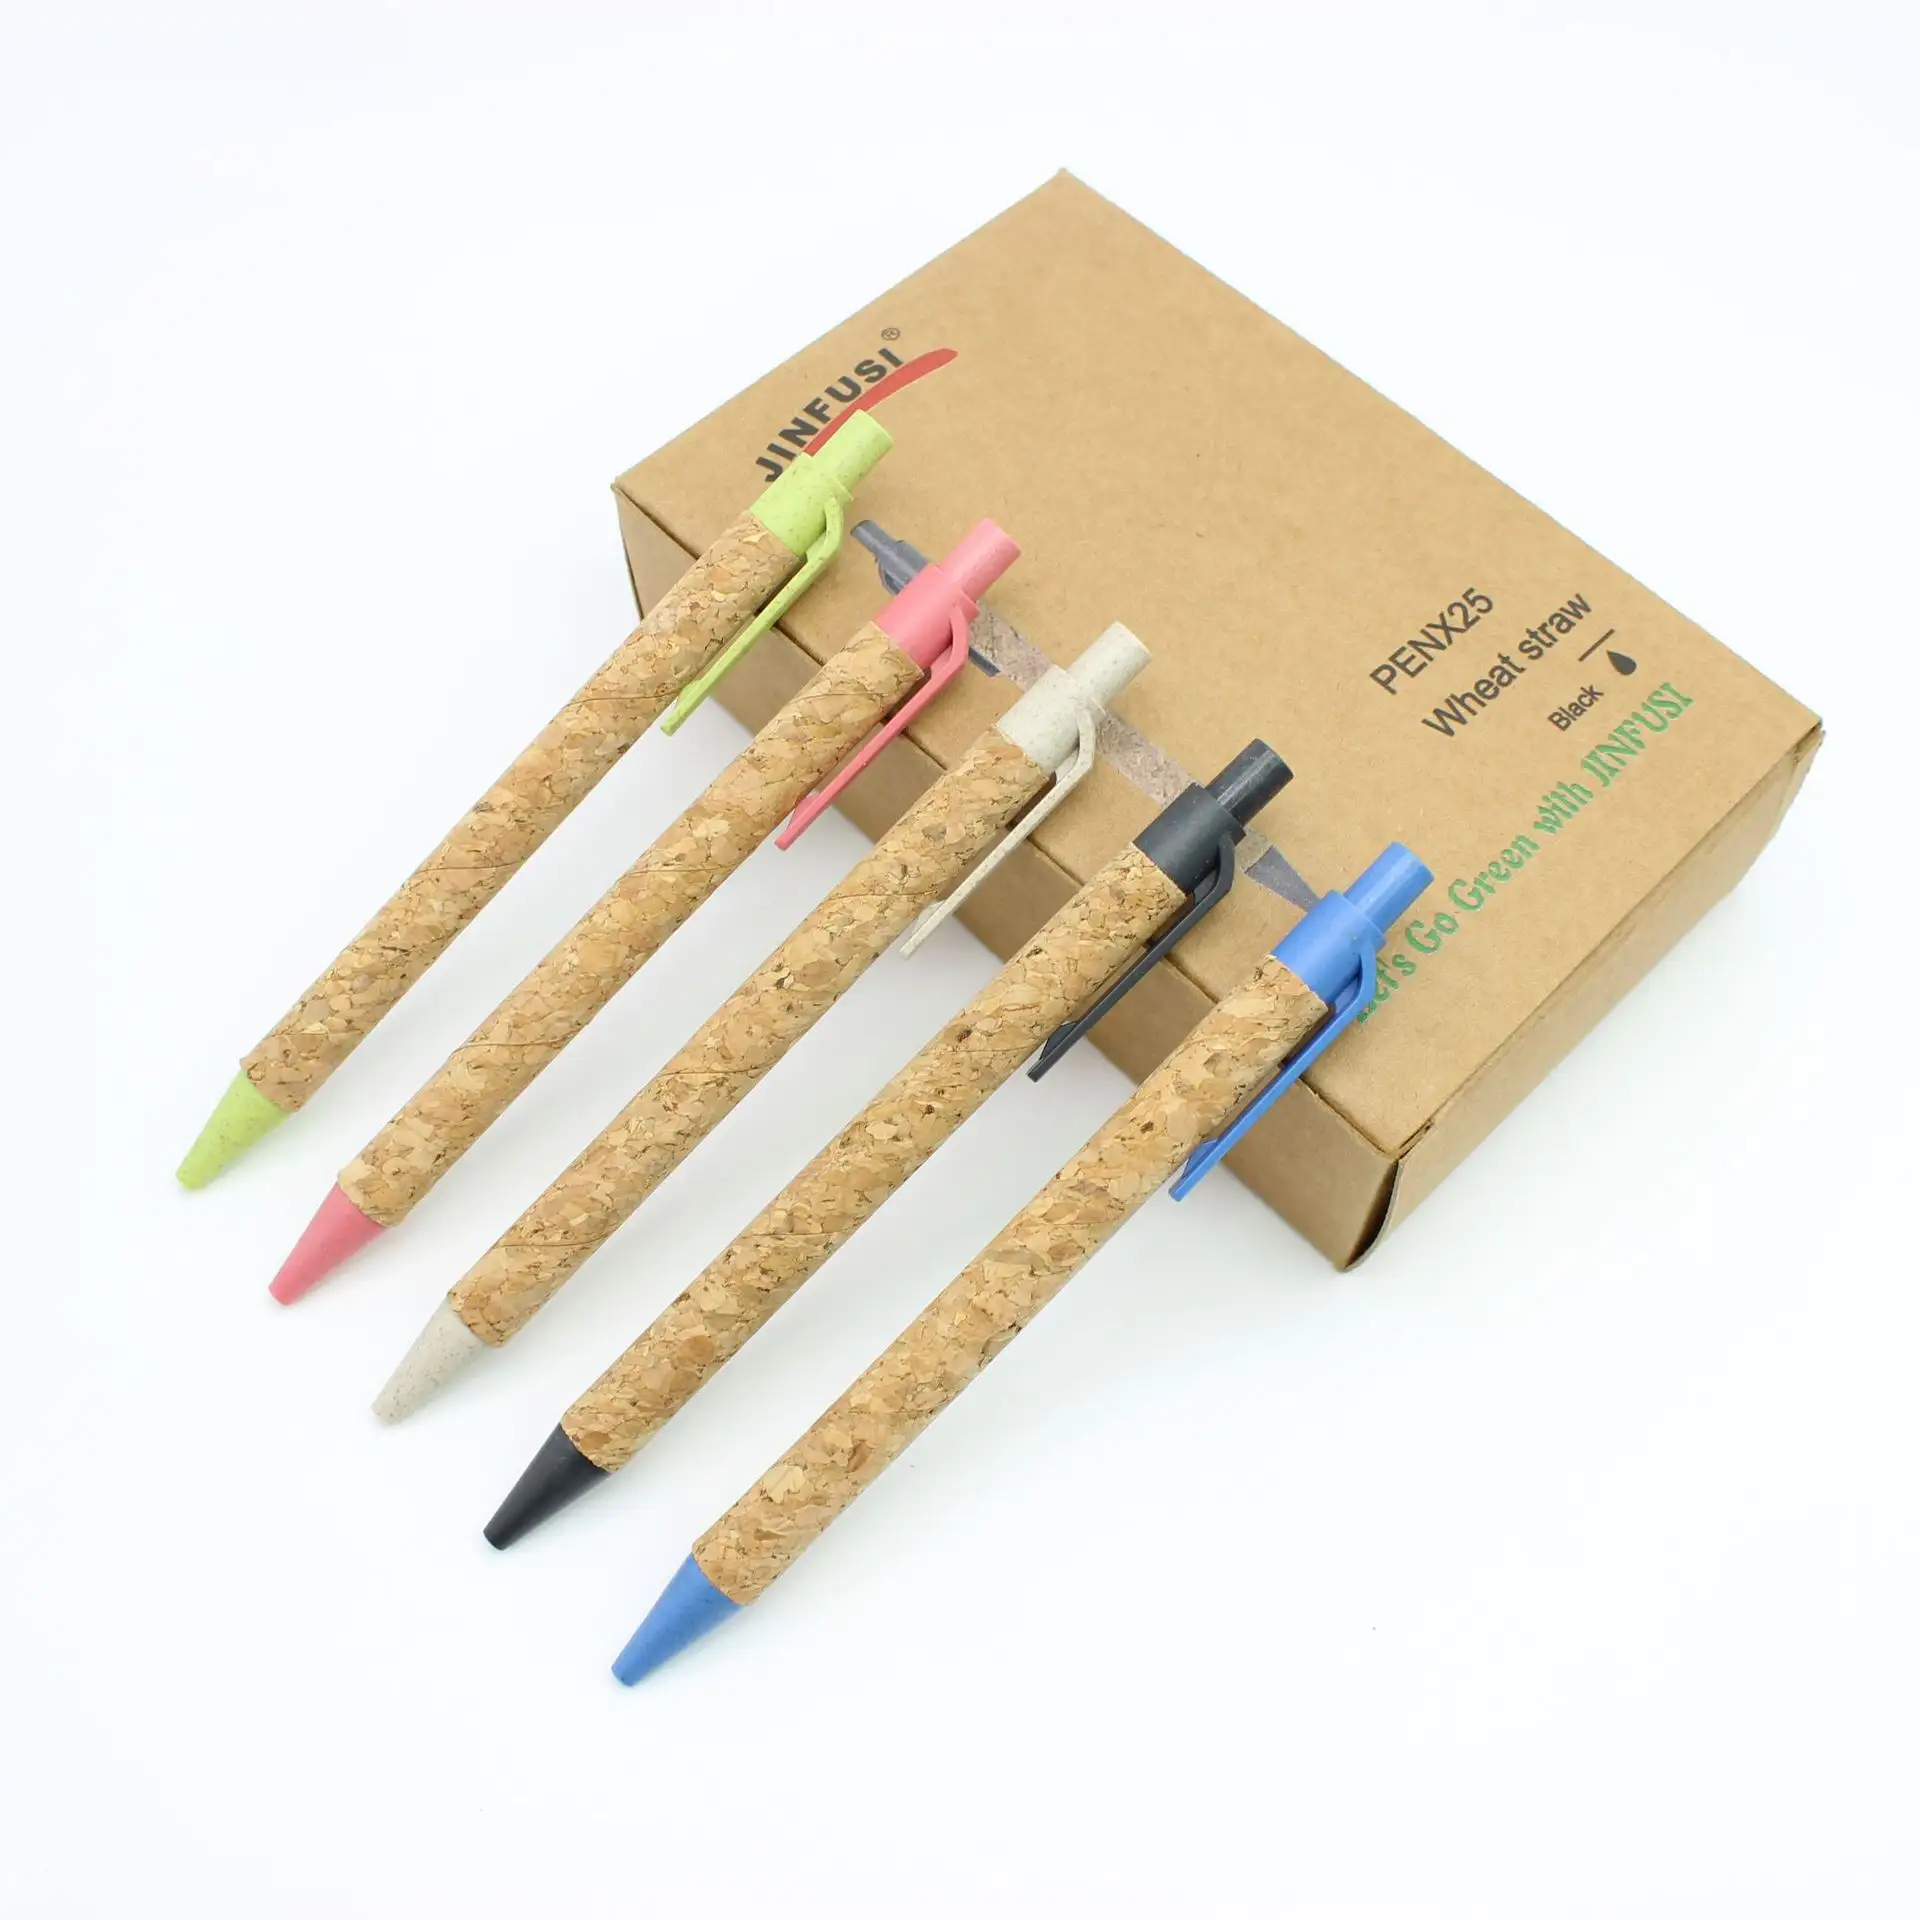 Großhandel Umweltschutz abbaubare Papier röhre Stift Weizens troh Material Kugelschreiber Öko Kork Geschenk Stift